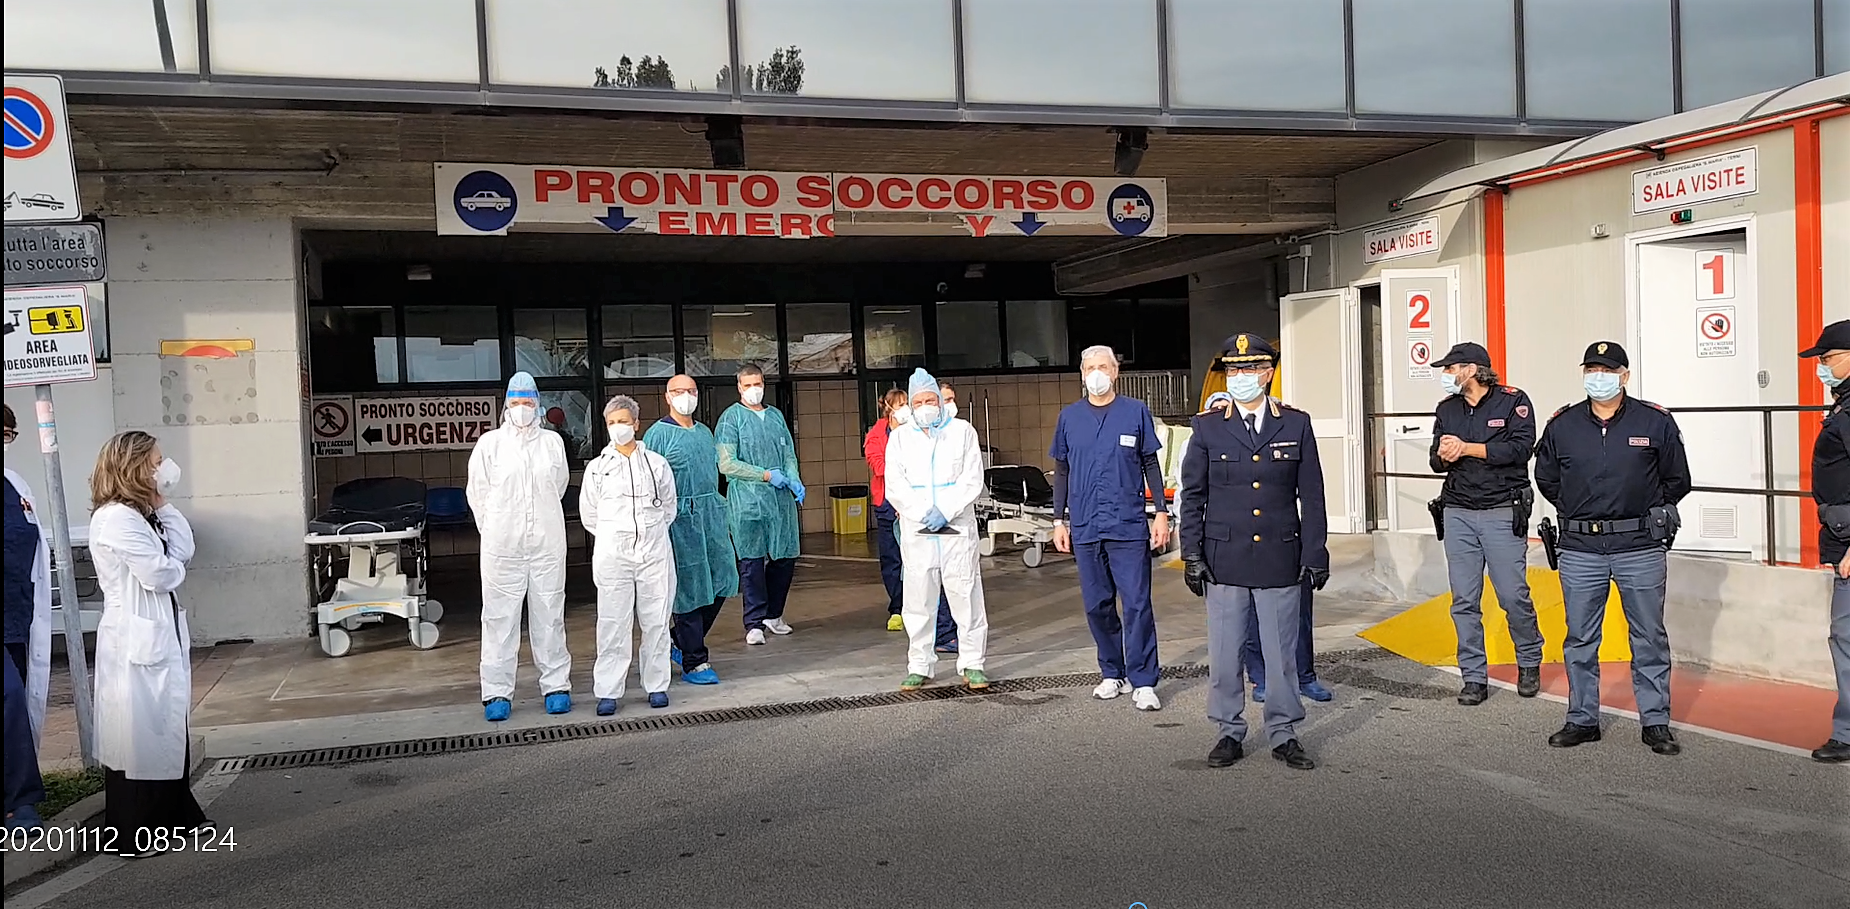 “Noi con Voi”: le Volanti della Polizia di Stato di Terni con l’Ospedale Santa Maria.